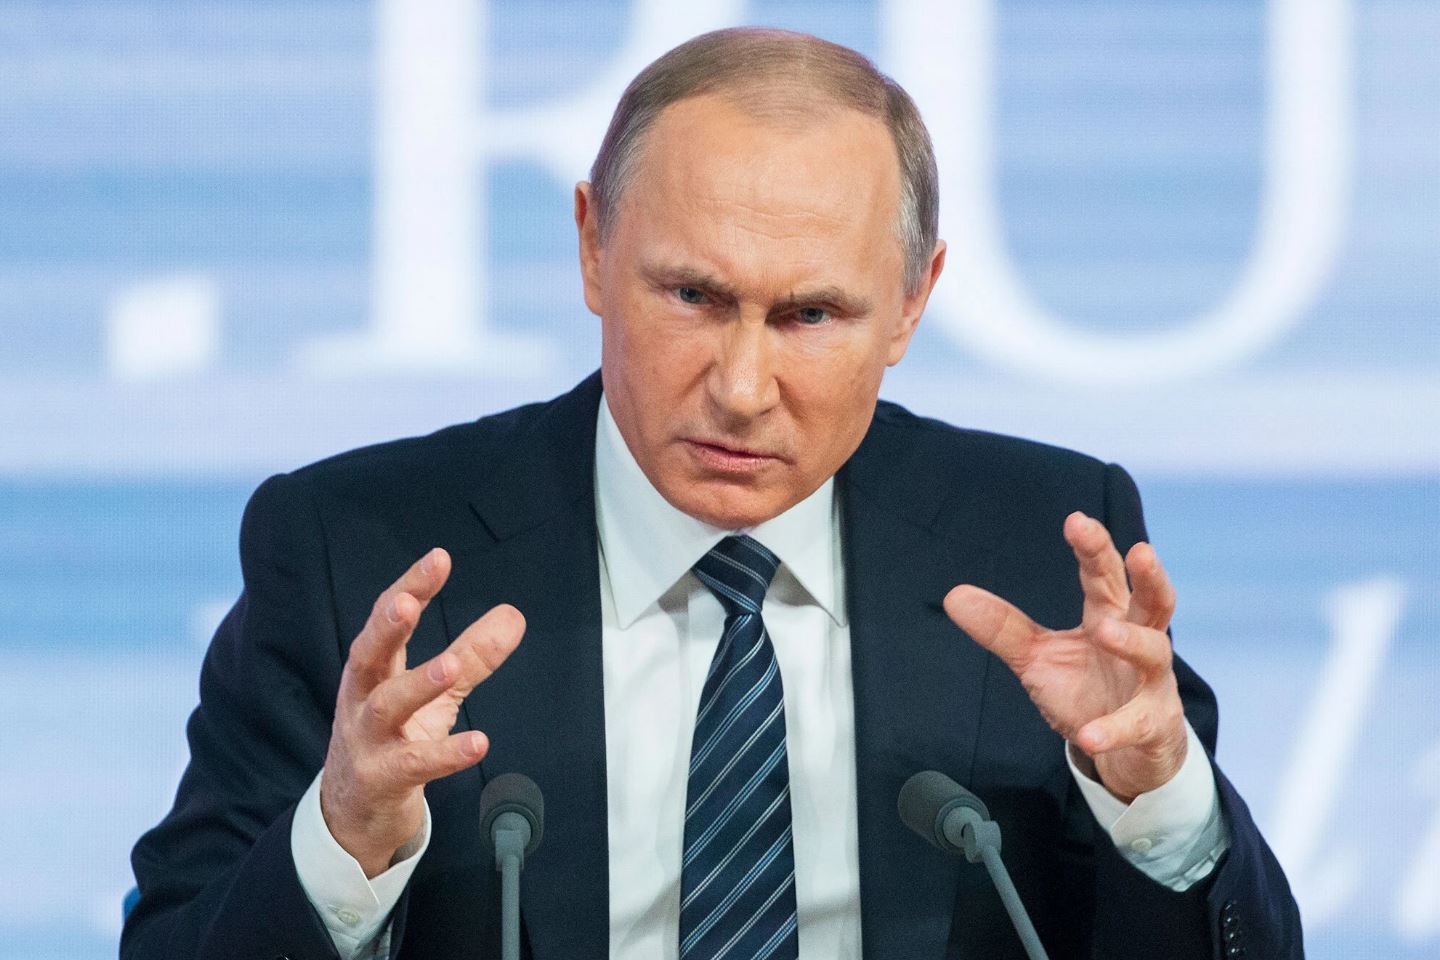 Πόλεμος στην Ουκρανία: Έξαλλος ο Βλαντίμιρ Πούτιν για τις ήττες, καρατομεί στρατηγούς